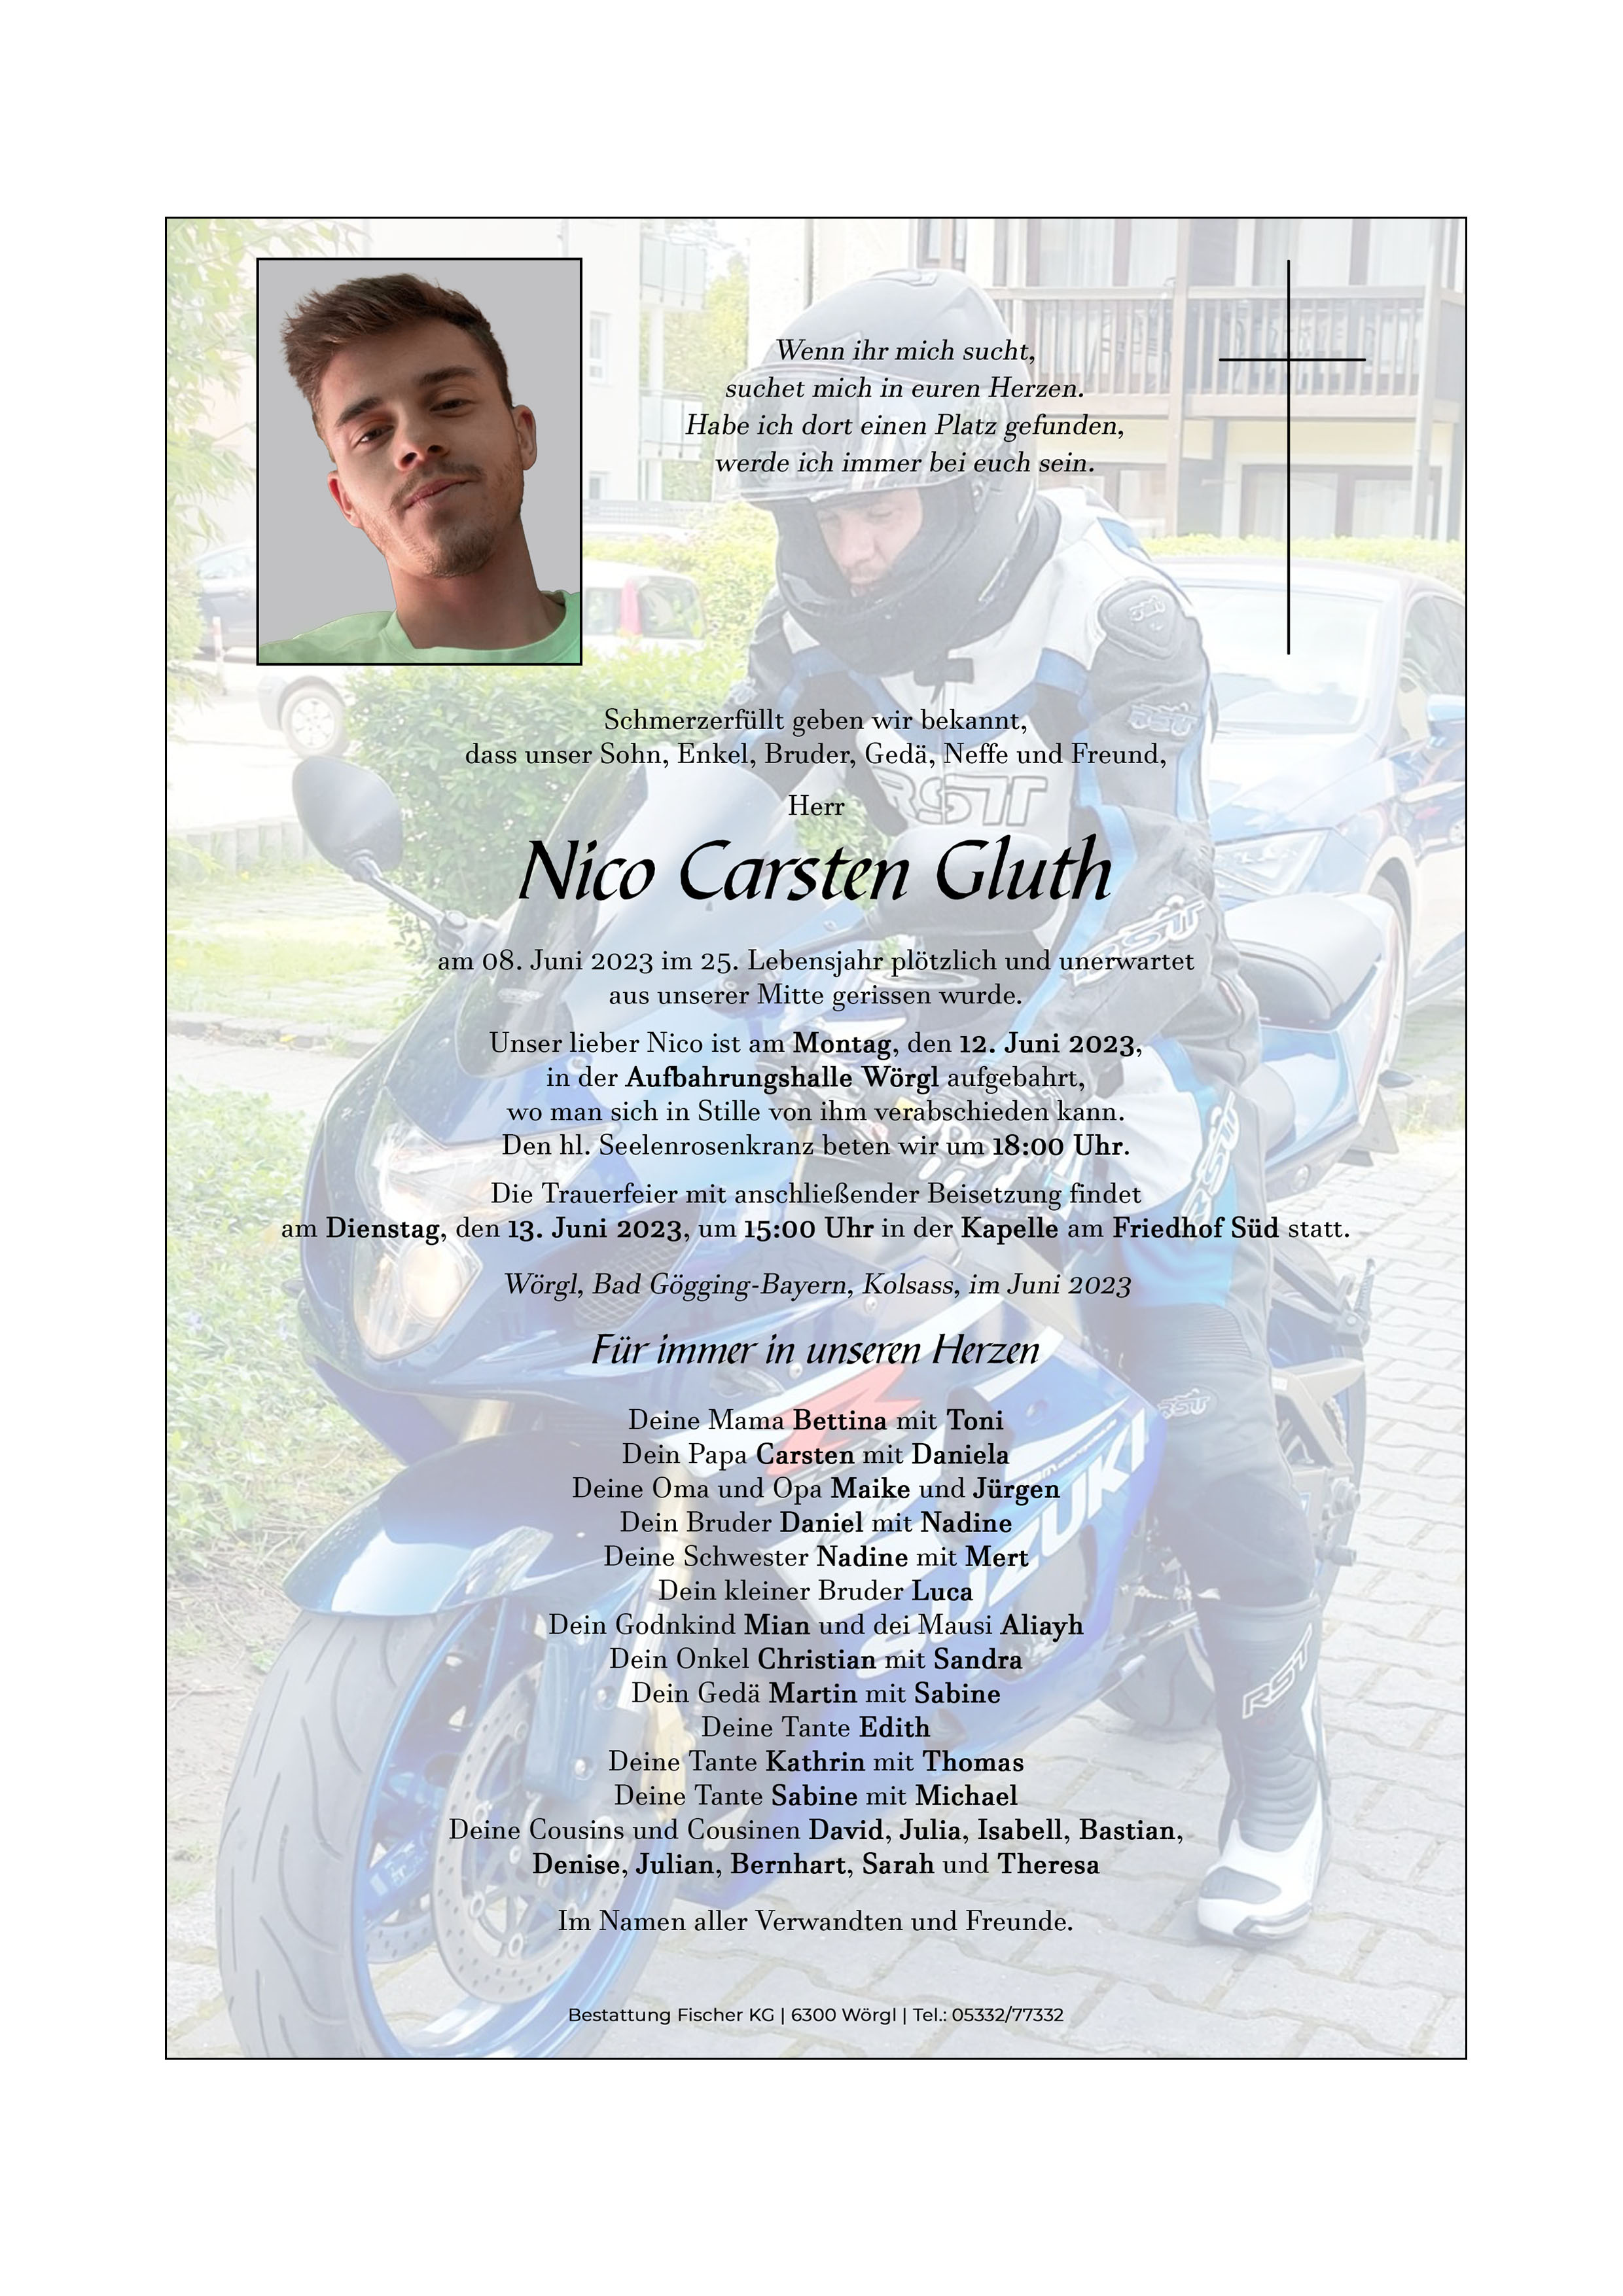 Nico Carsten Gluth